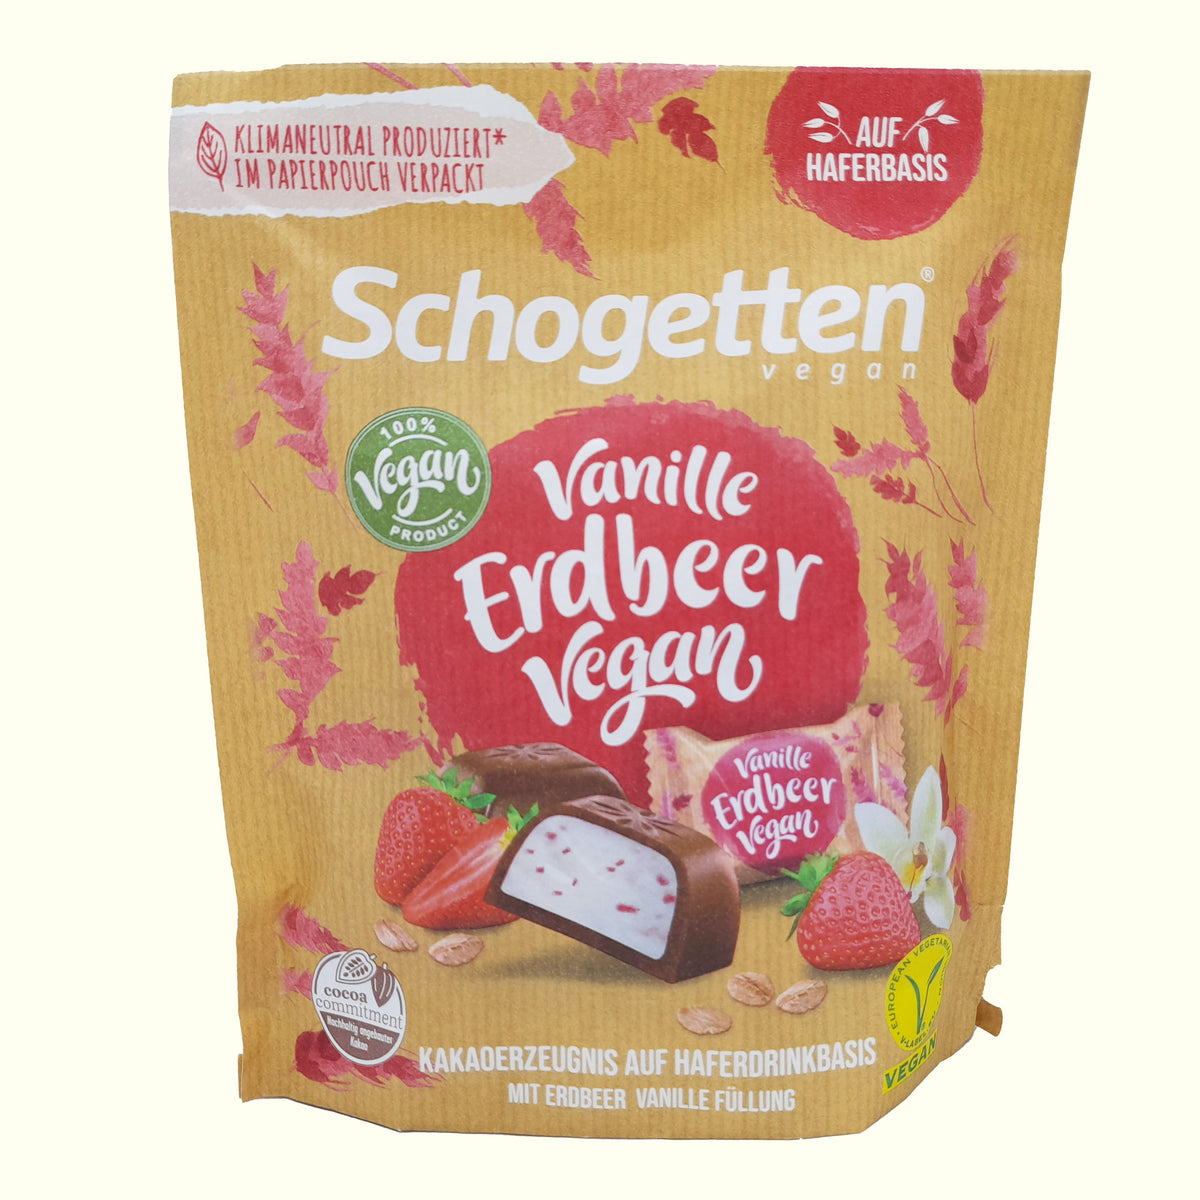 Schogetten Vegan Vanille Erdbeer 125g